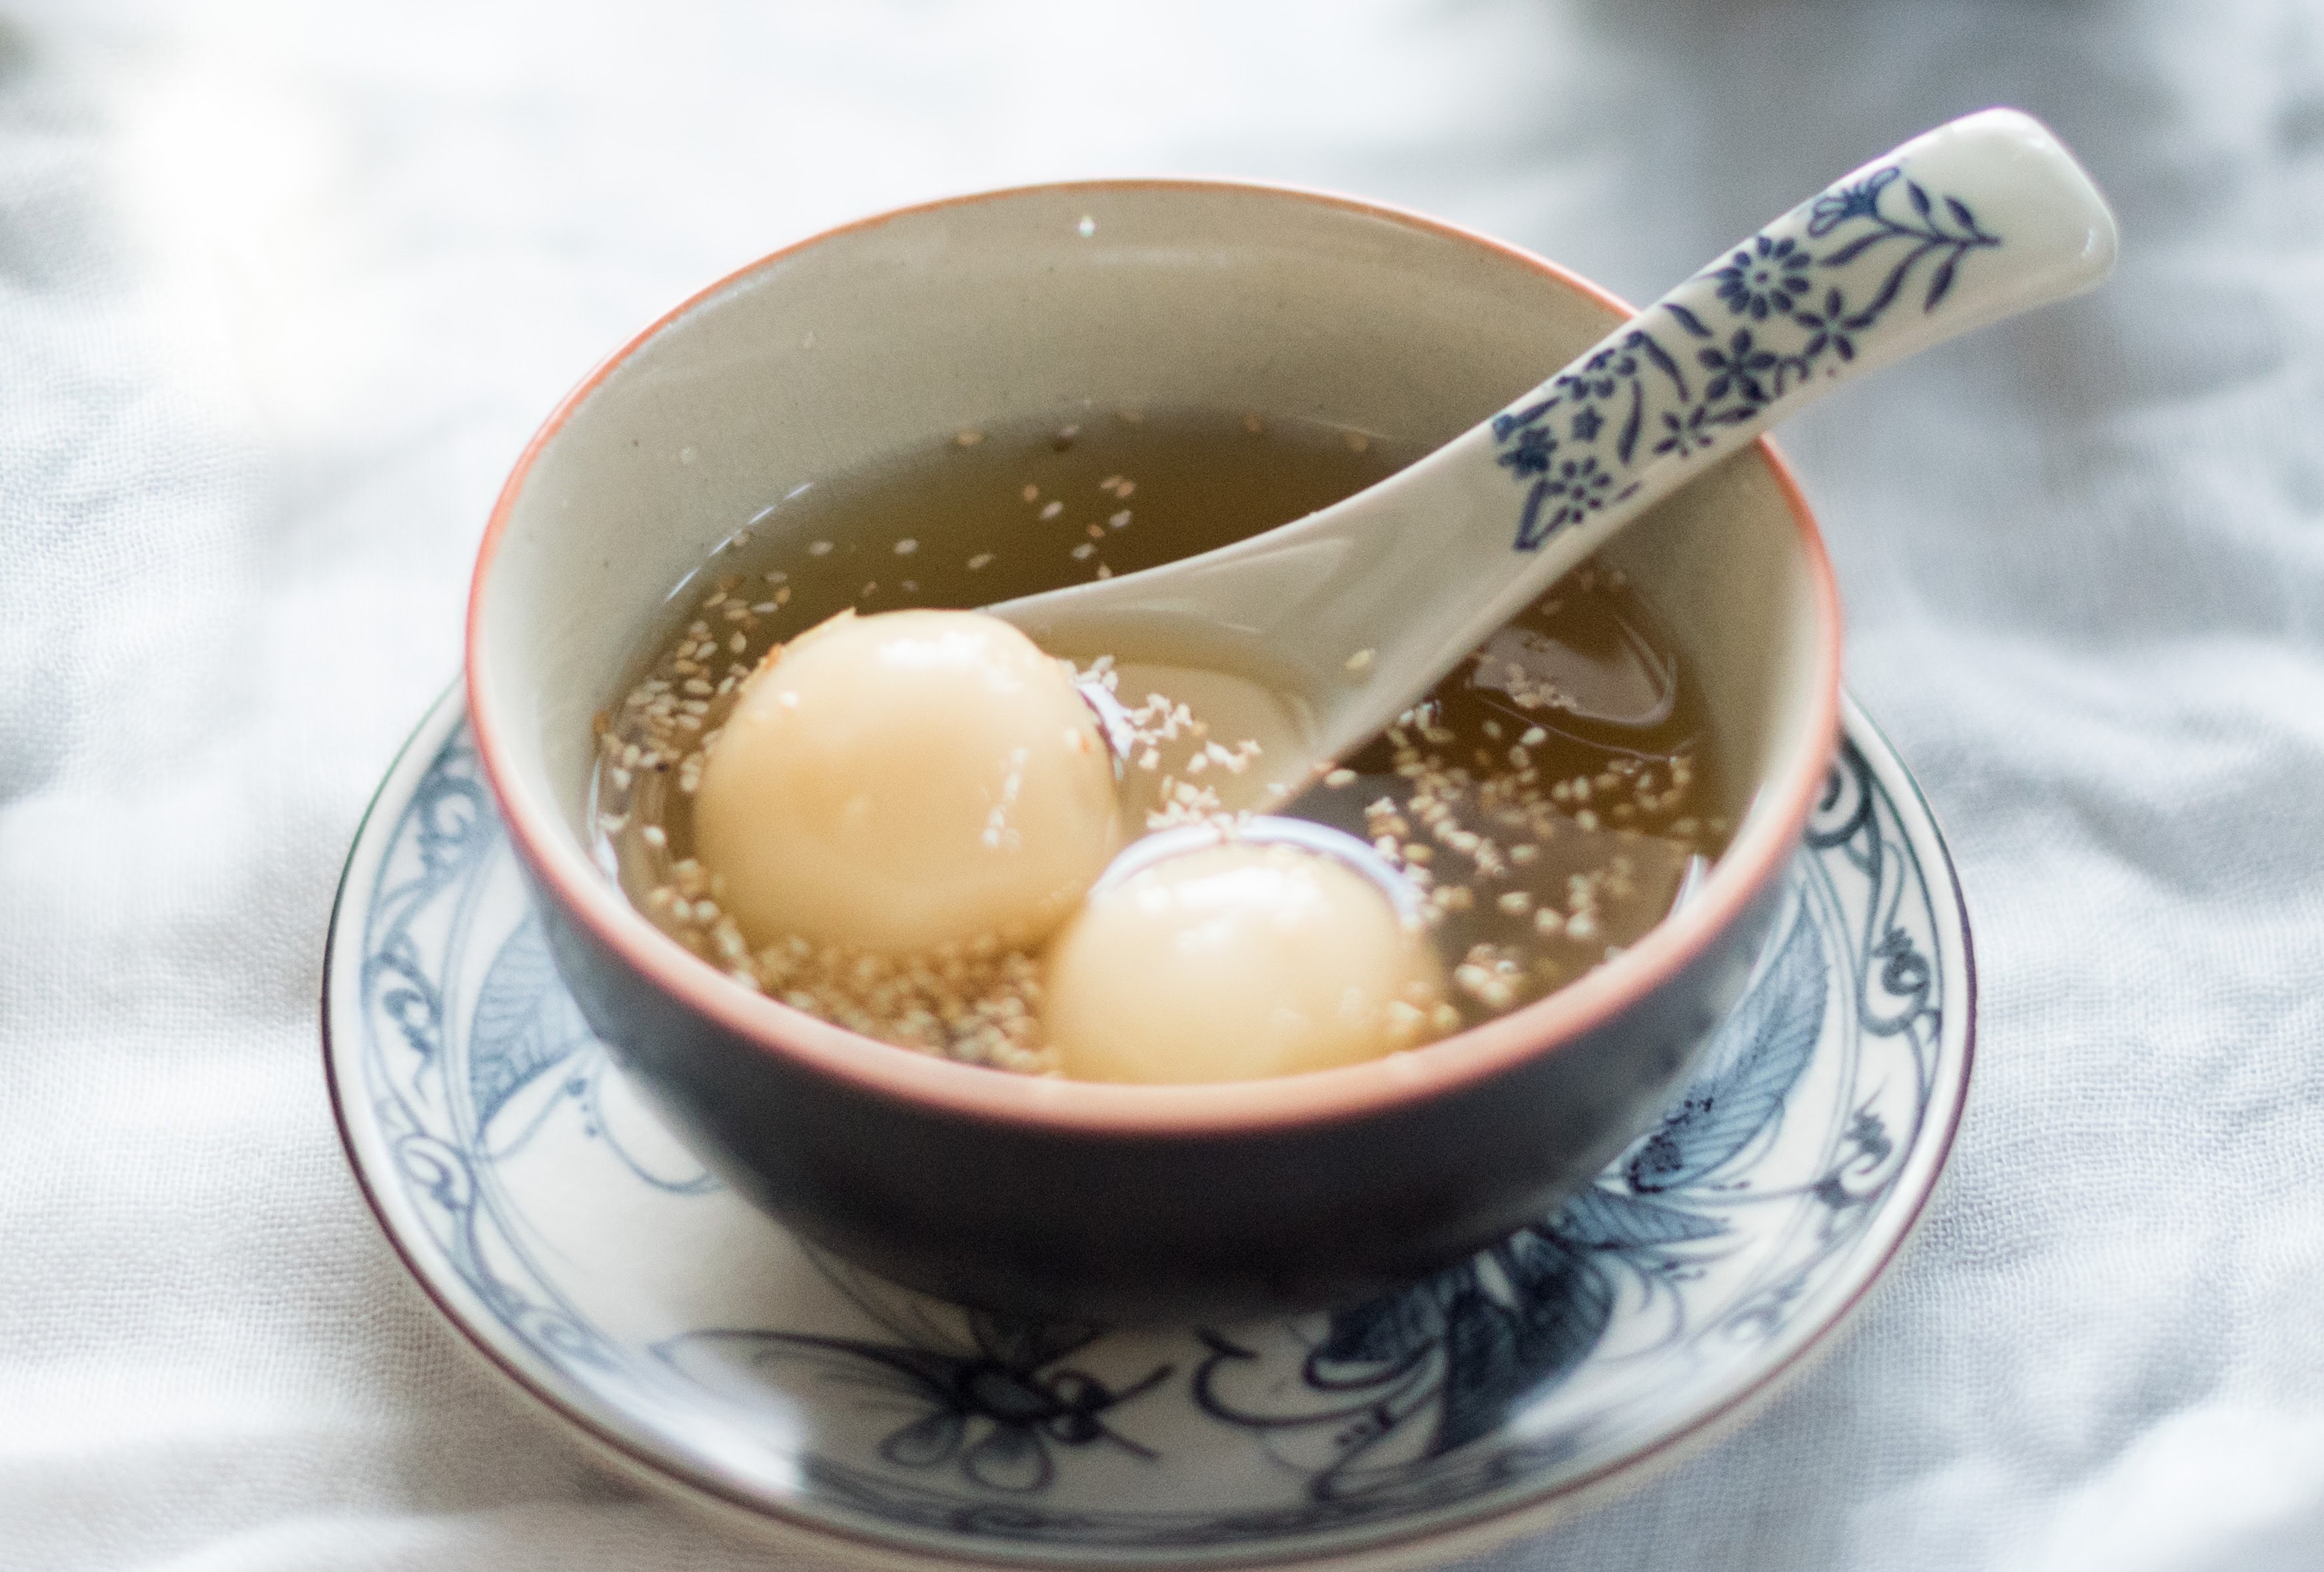 Chè trôi nước là món ăn đặc trưng của người miền Nam vào Tết Đoan Ngọ